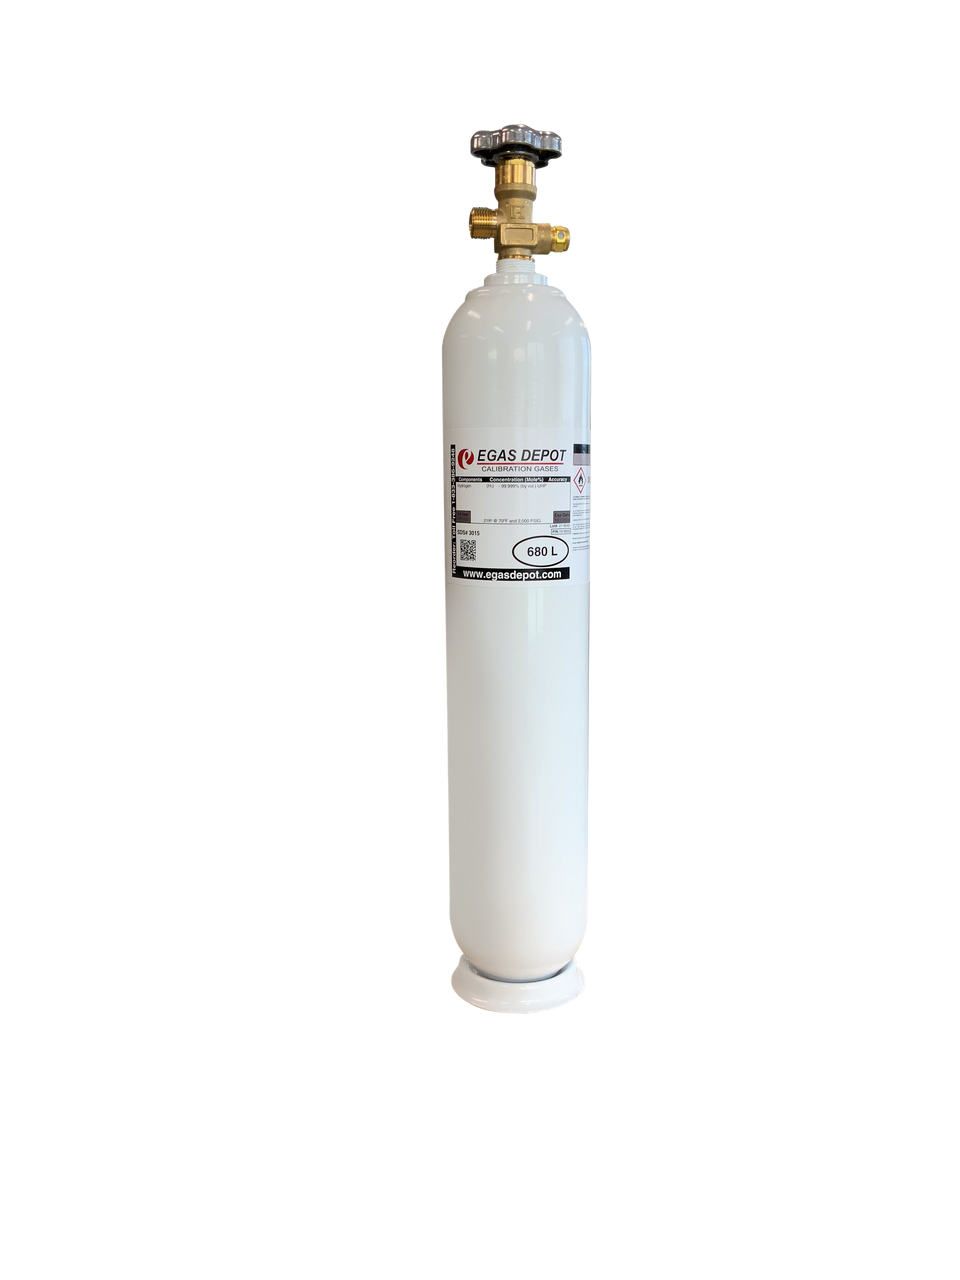 680 Liter-Methane 1.0% (20% LEL)/ Oxygen 18.0%/ Nitrogen